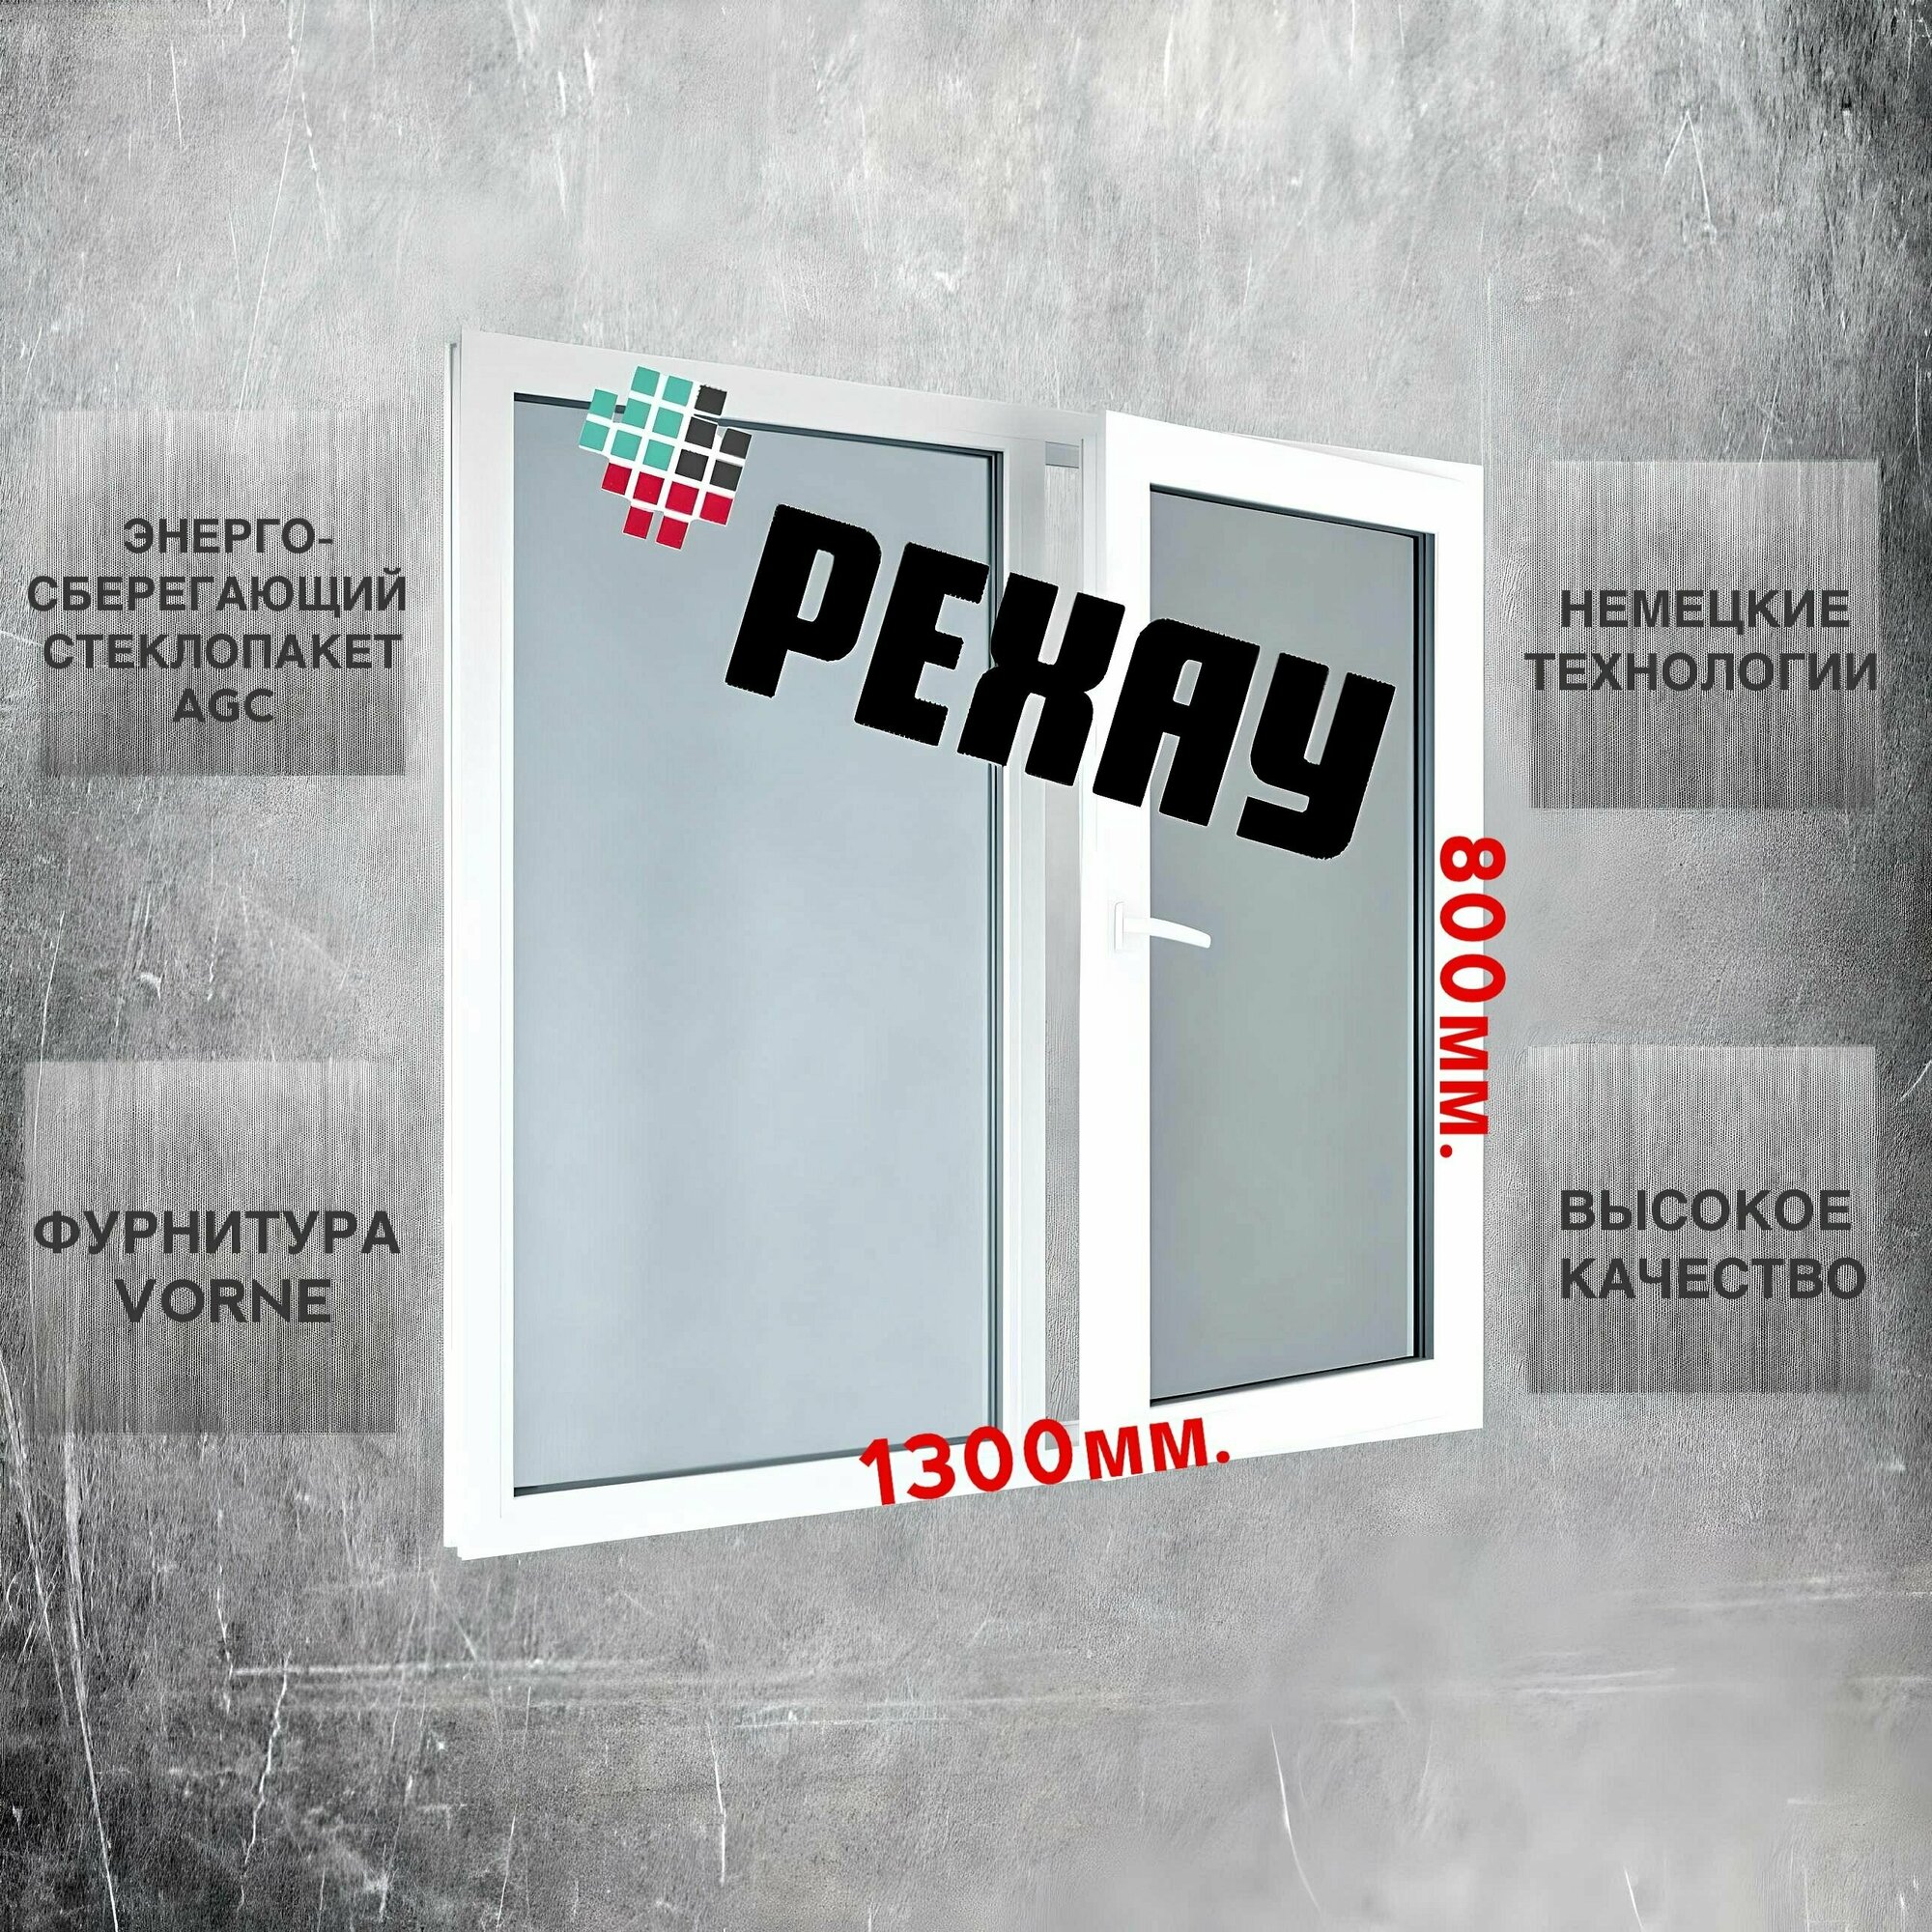 Окно пвх РЕХАУ (800х1300)мм, двустворчатое, с глухой левой и поворотно-откидной правой створкой, энергосберегающий стеклопакет, 2 стекла, фурнитура VORNE.